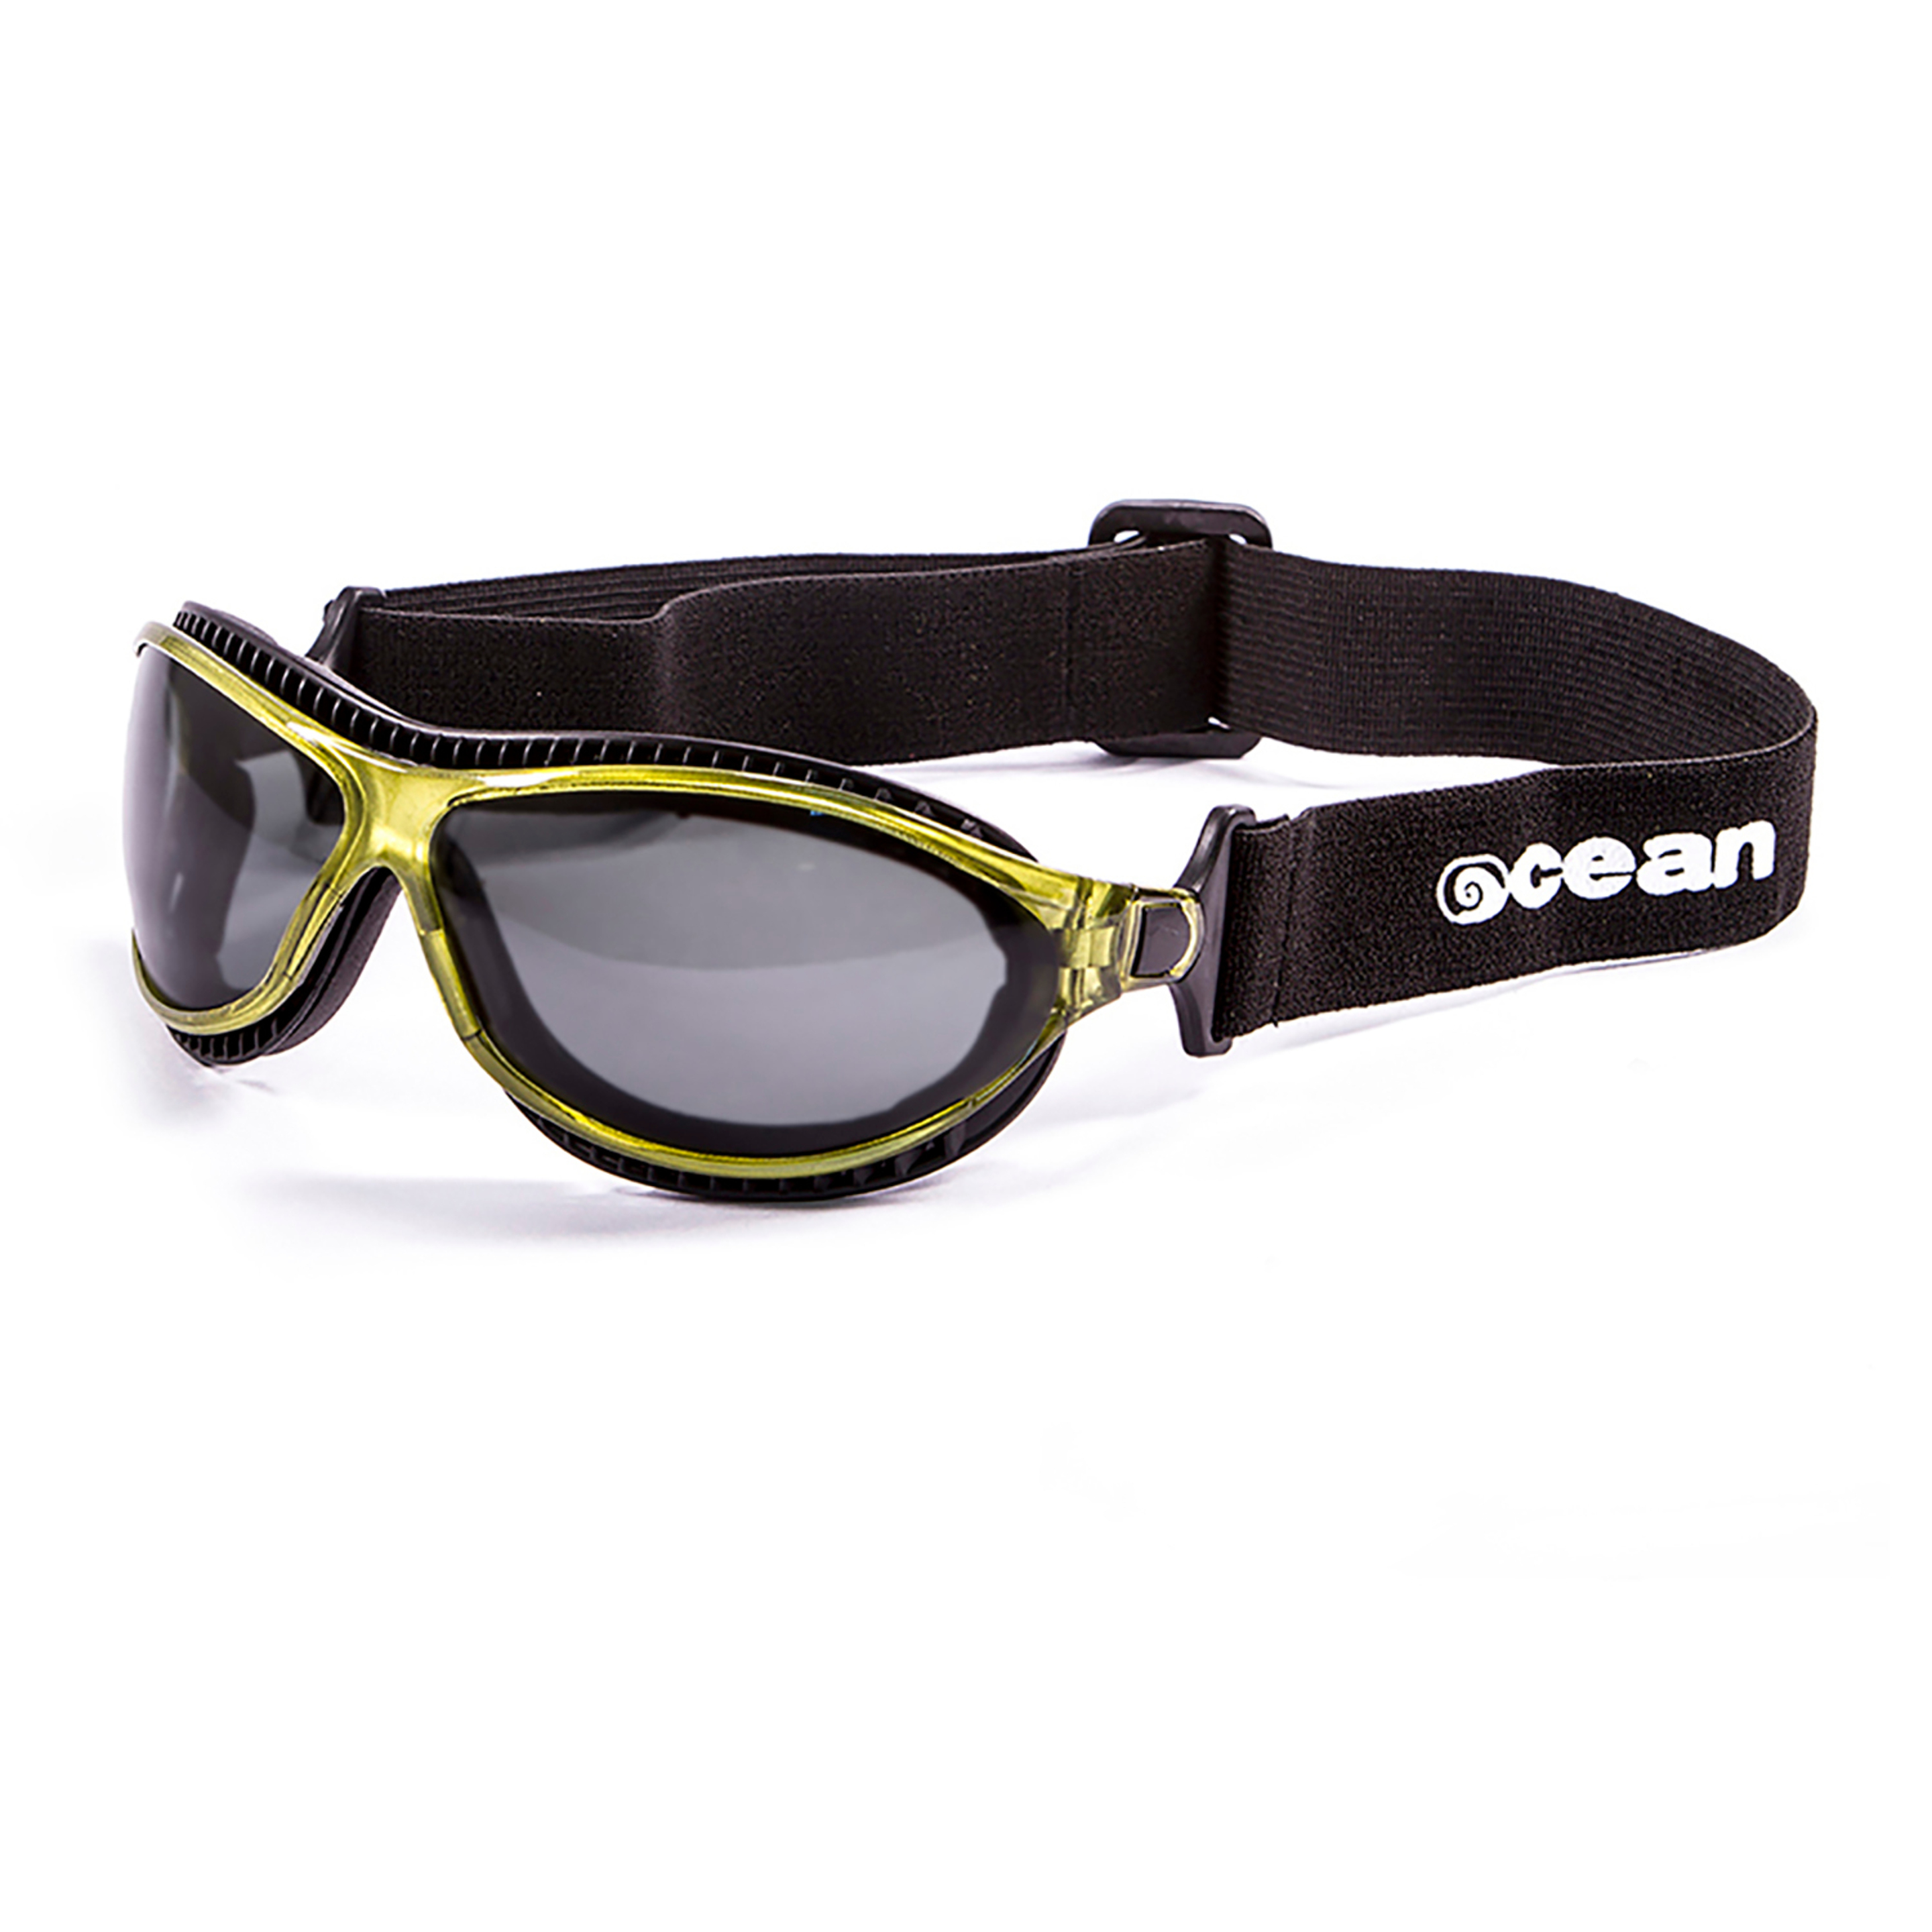 Gafas De Sol Técnicas Para La Práctica De Deportes De Agua Tierra De Fuego Ocean Sunglasses